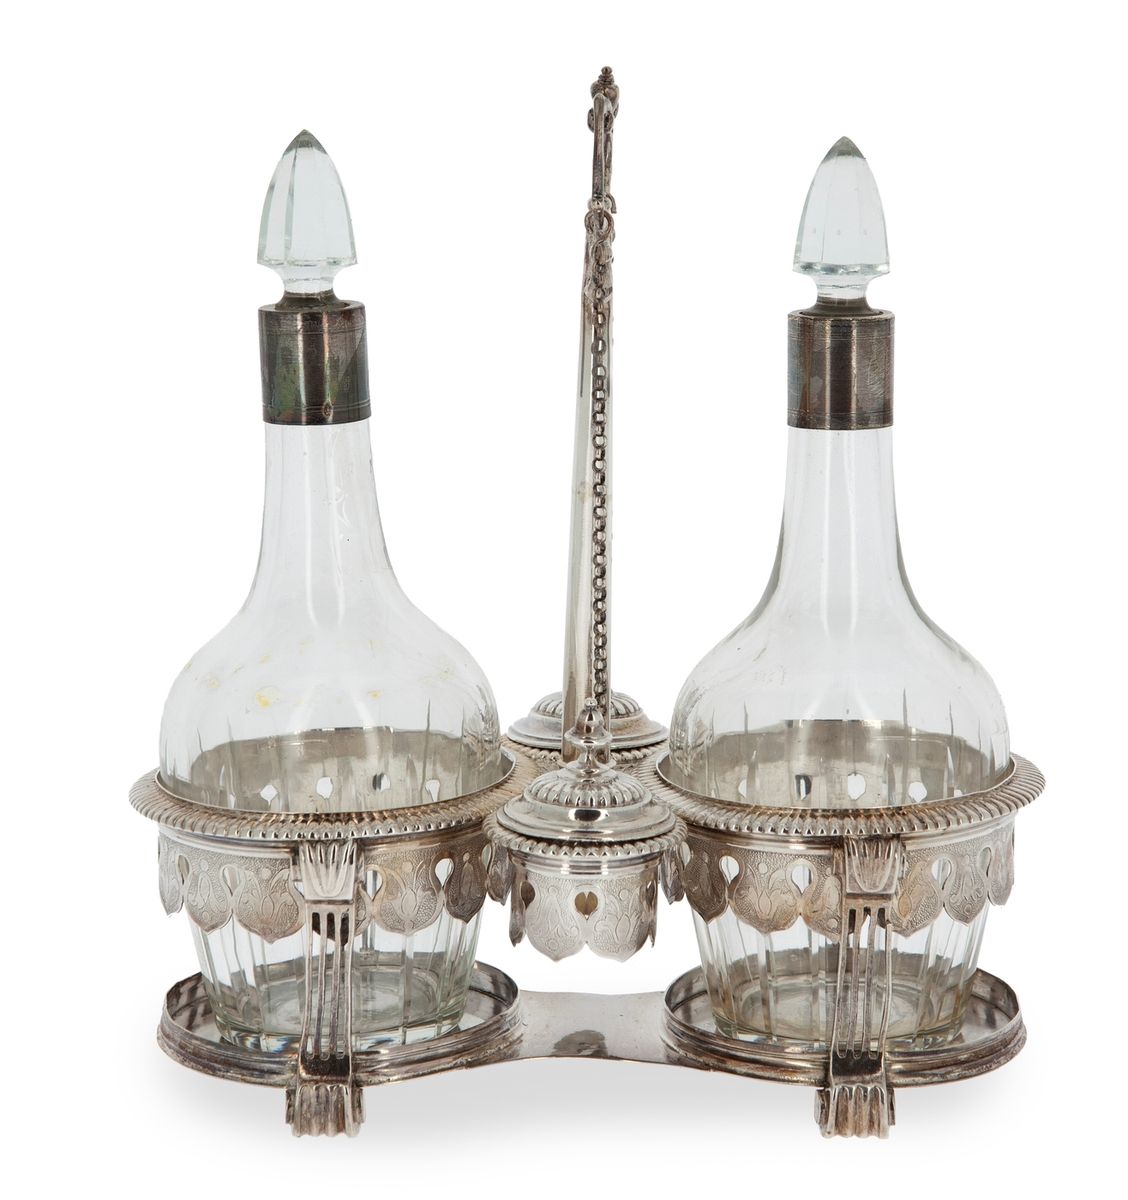 Null 路易十五风格的银质雕花油壶 
18世纪的比利时作品
安特卫普印记和金属握把 
高度：23厘米
重量不包括醒酒器和盖子：526克
(醒酒器是报告的)